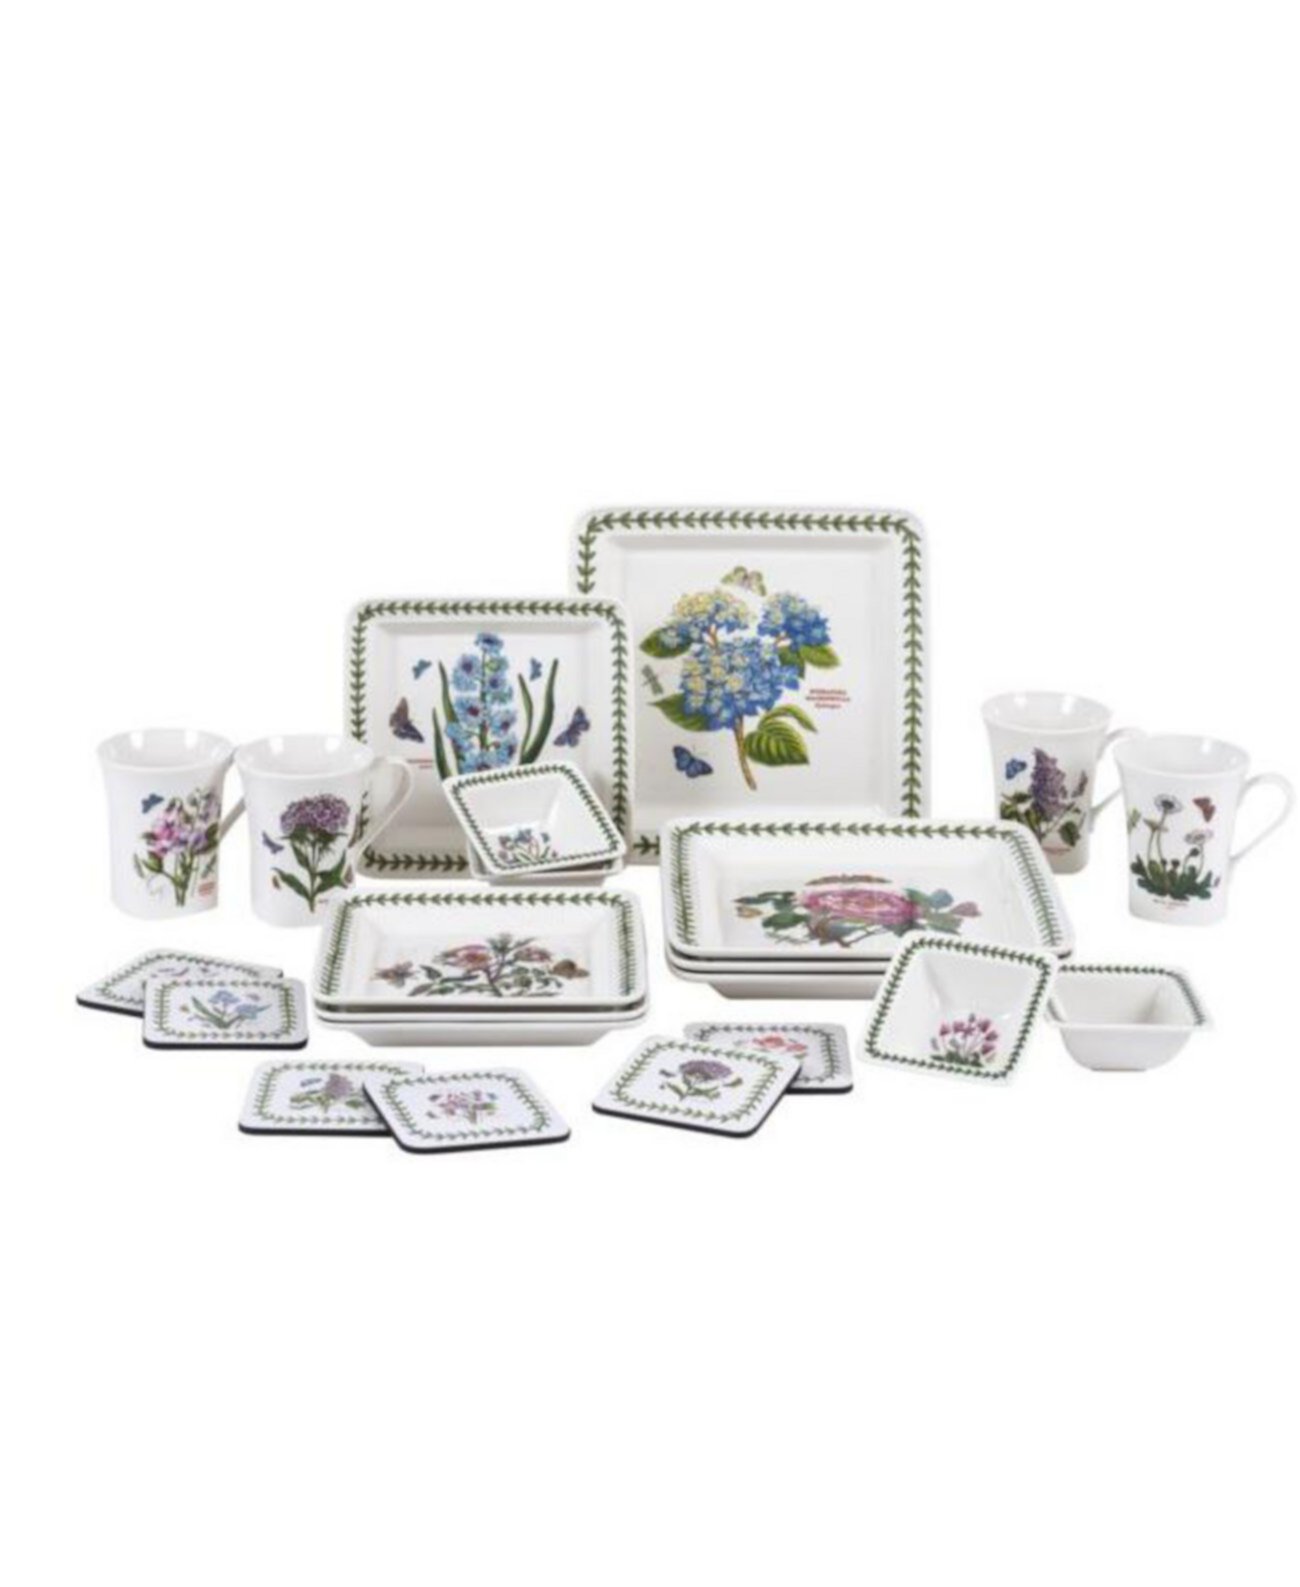 Набор квадратной посуды Botanic Garden из 22 предметов, созданный для Macy's Portmeirion